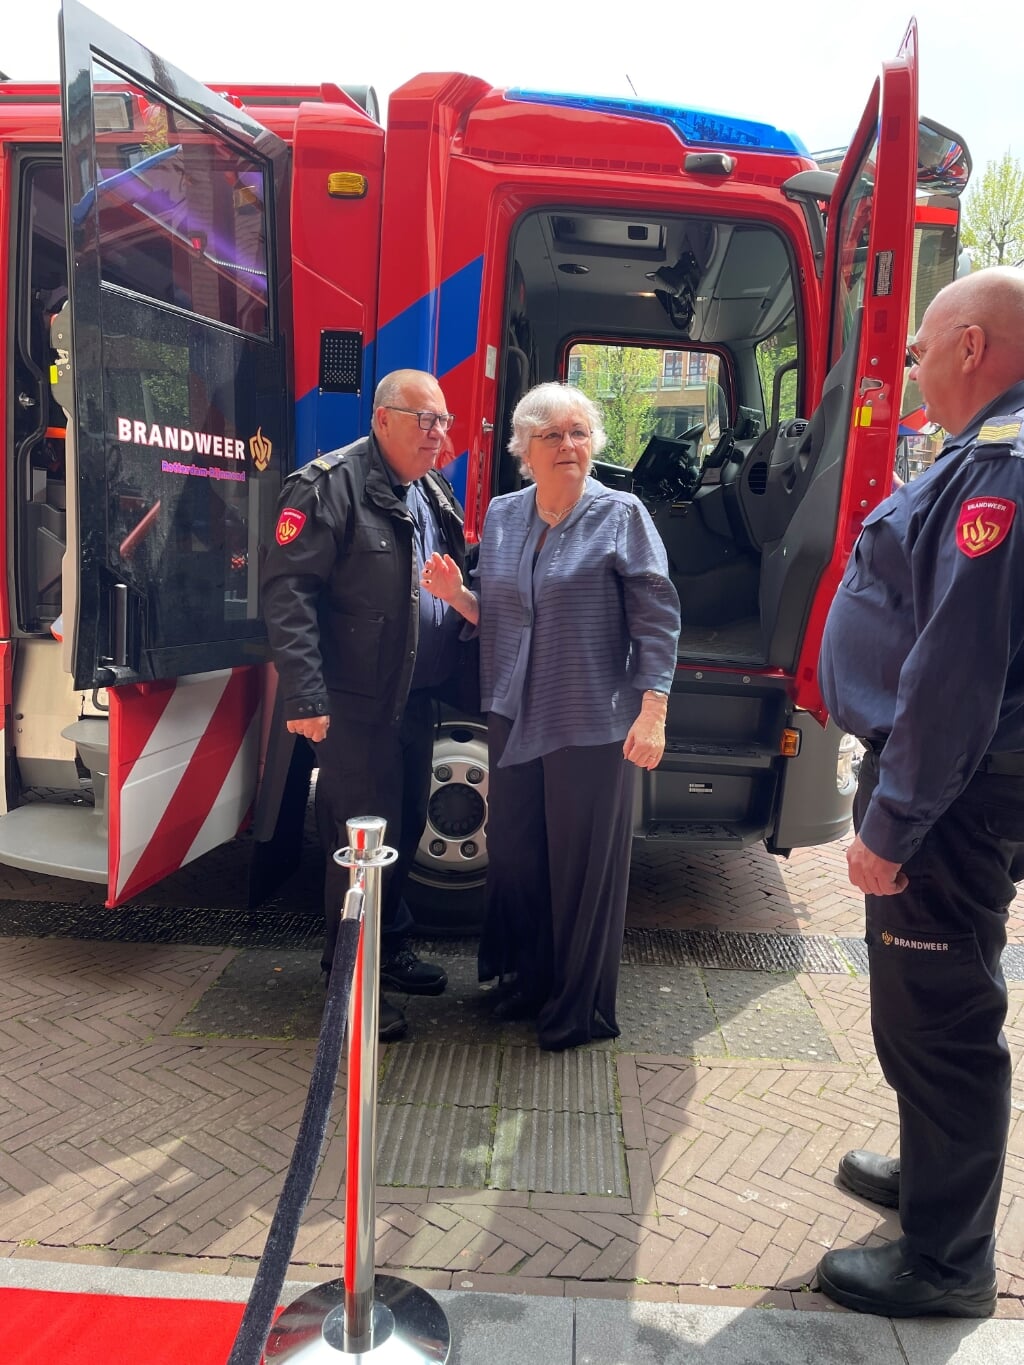 Burgemeester Attema werd met een brandweerwagen naar het gemeentehuis gebracht